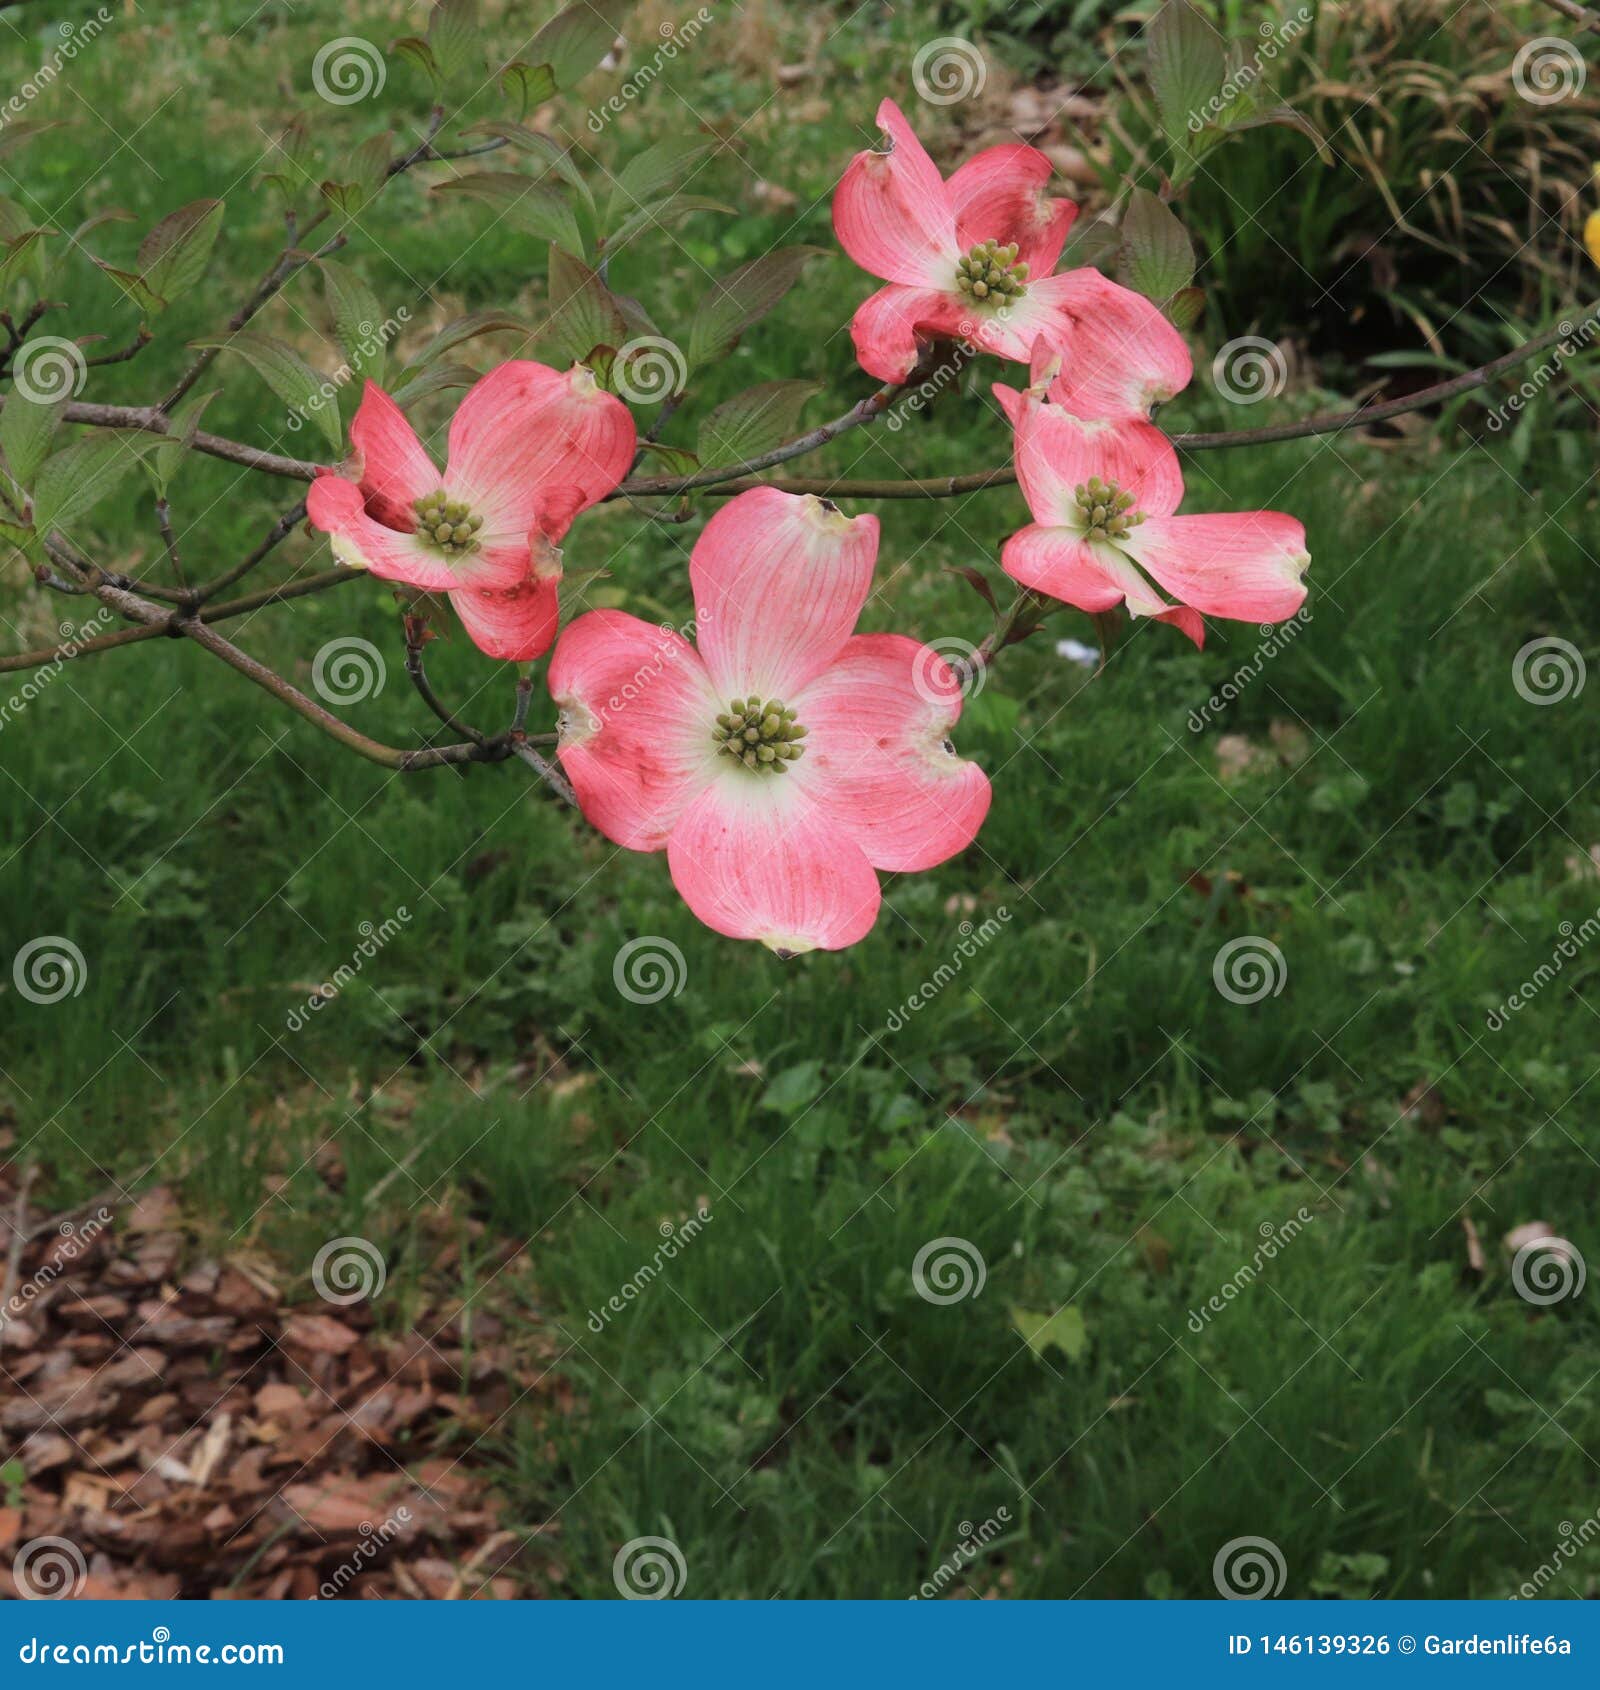 pink flowering dogwood tree cornus florida in bloom